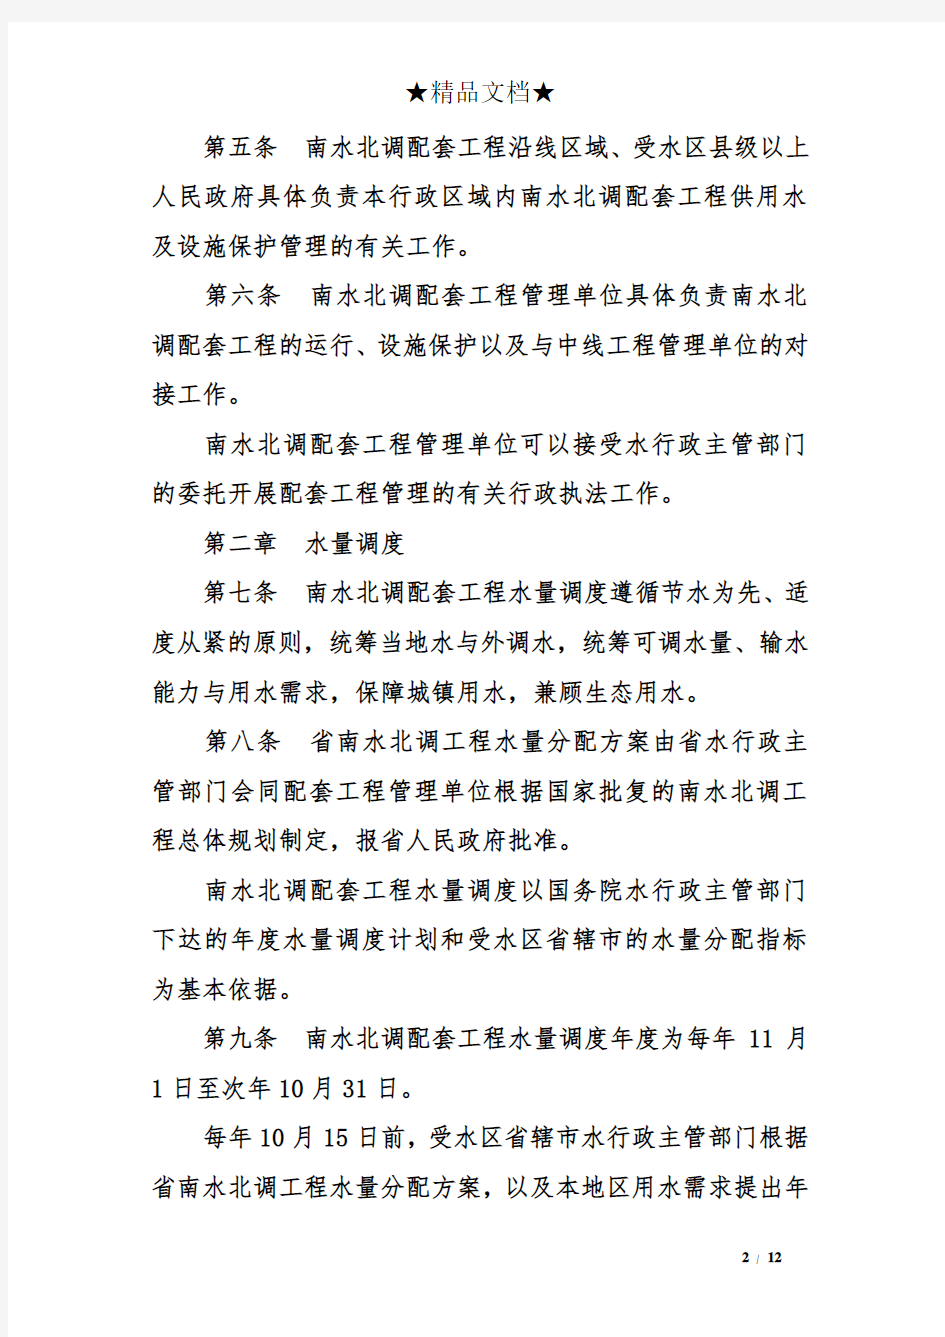 河南省南水北调配套工程设施保护管理办法